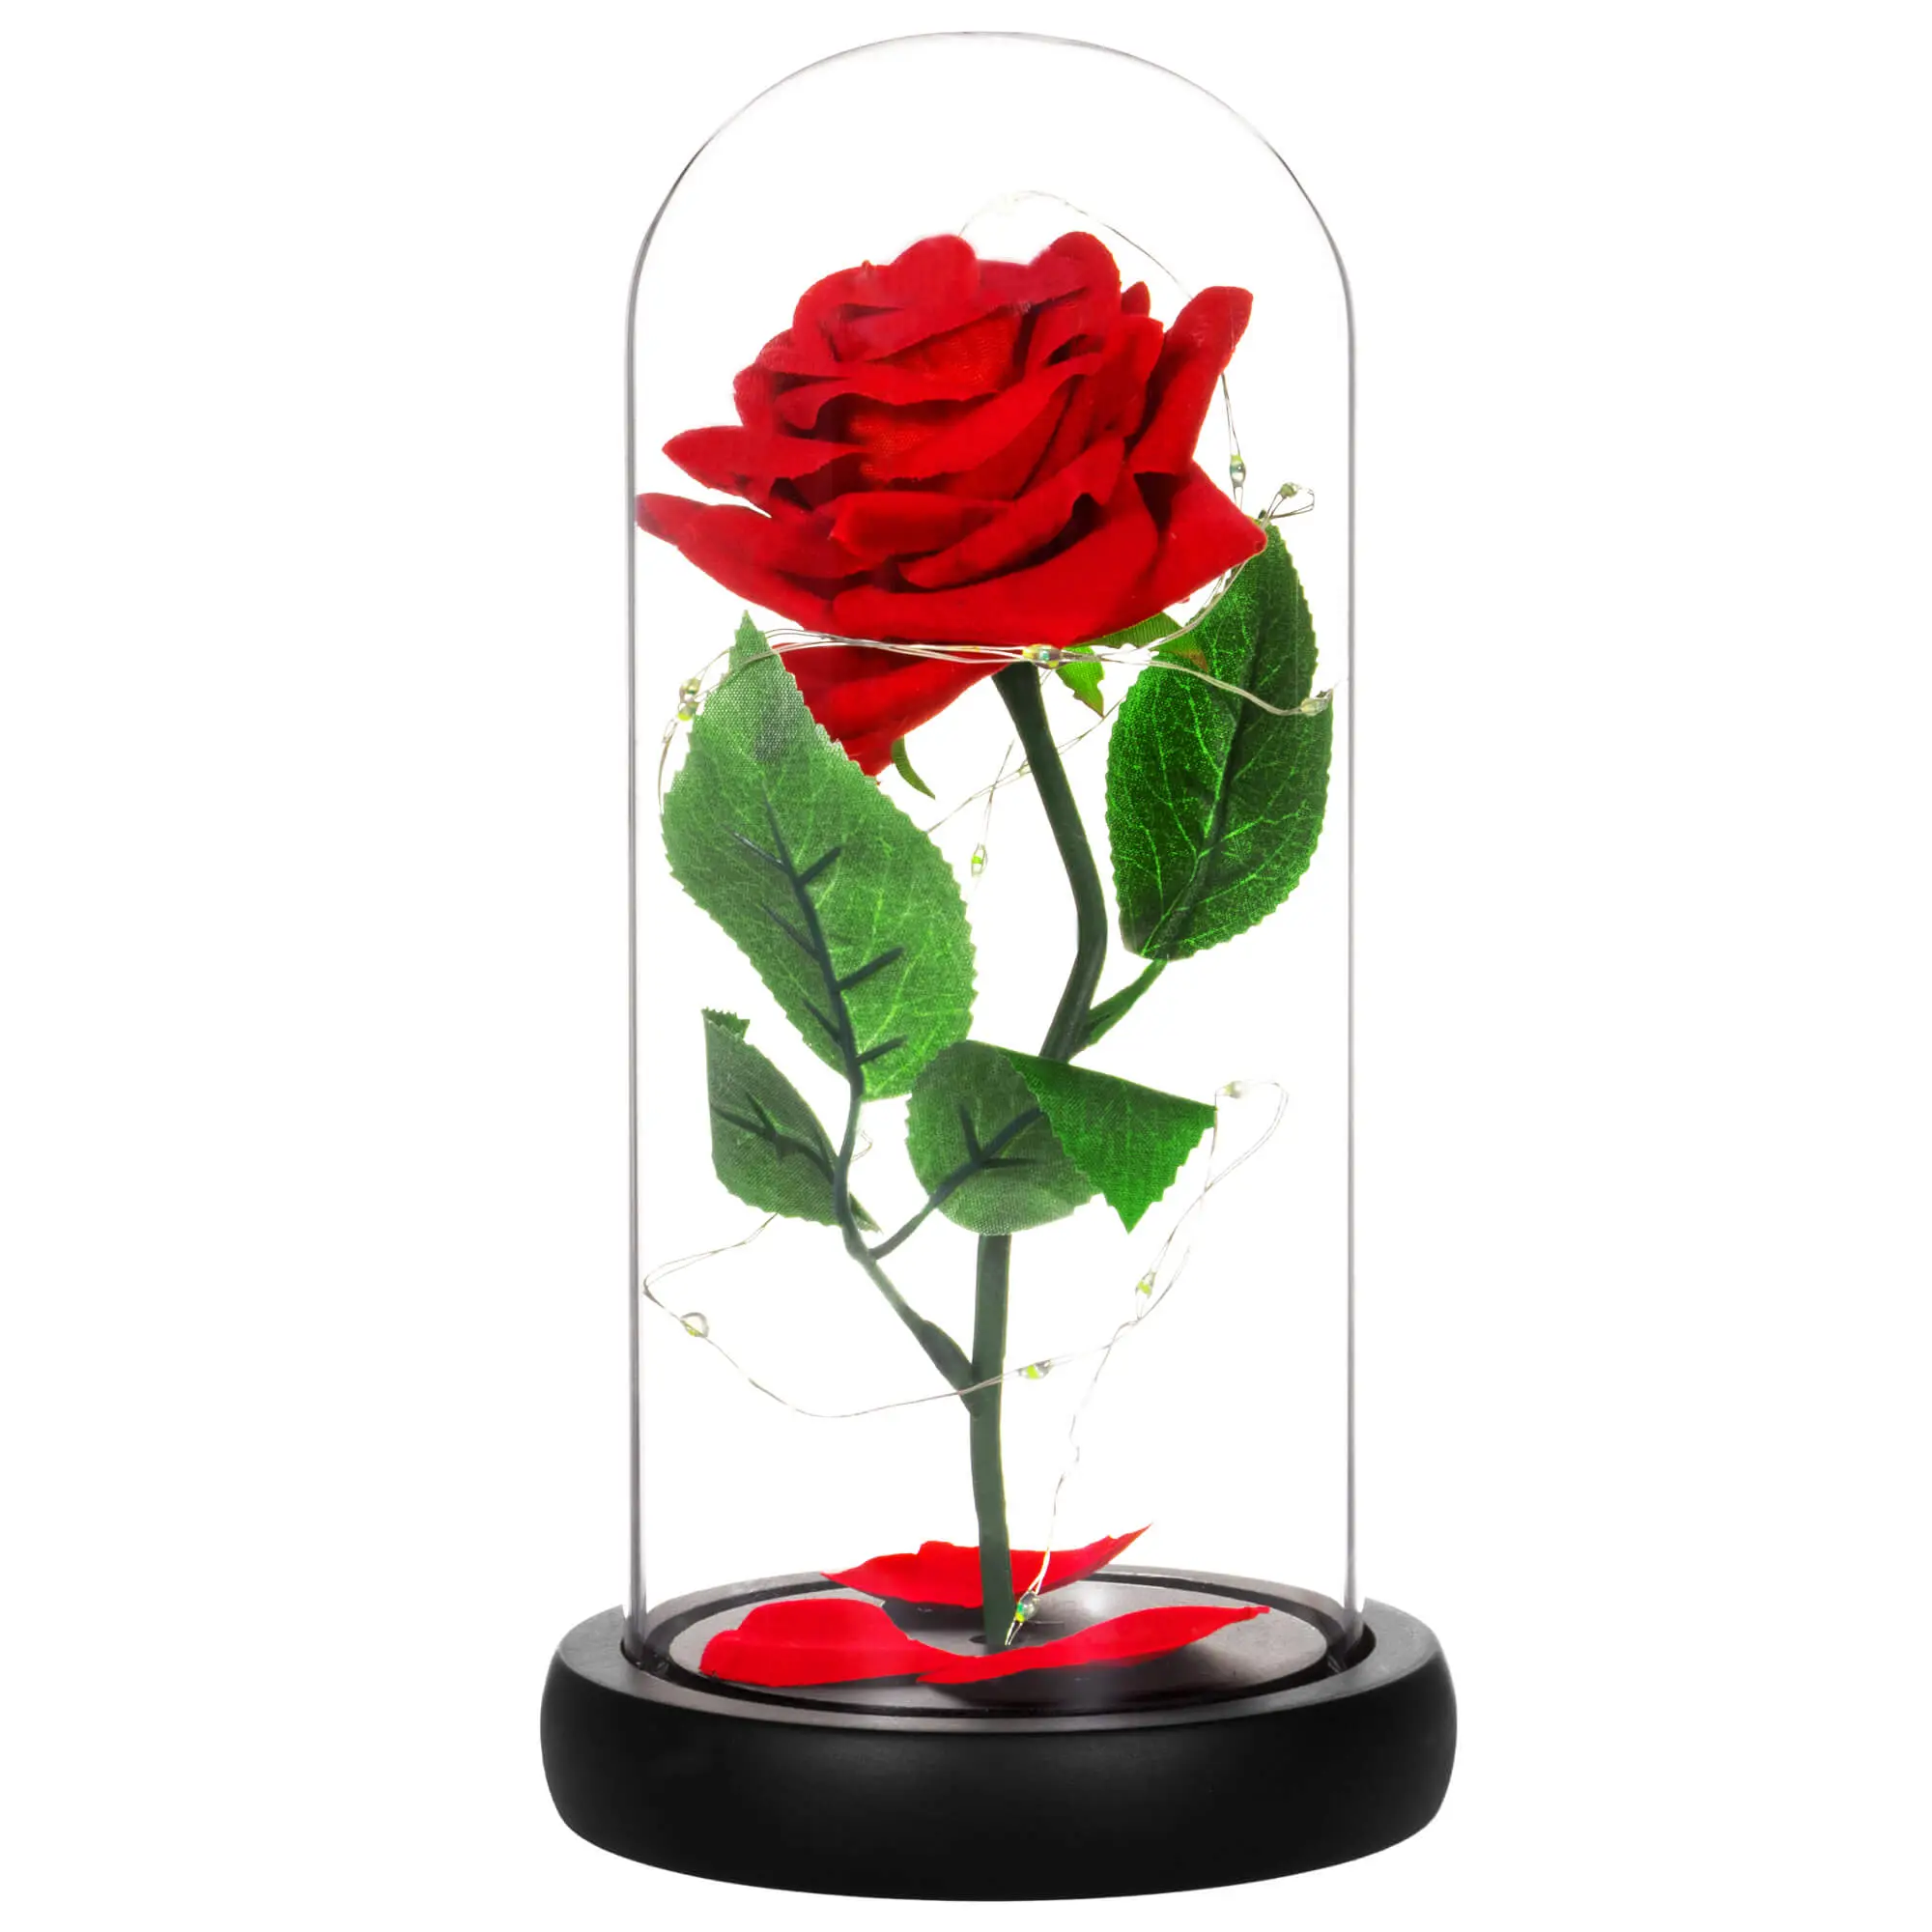 Rose im Glas 22 cm mit LED-Lichterkette